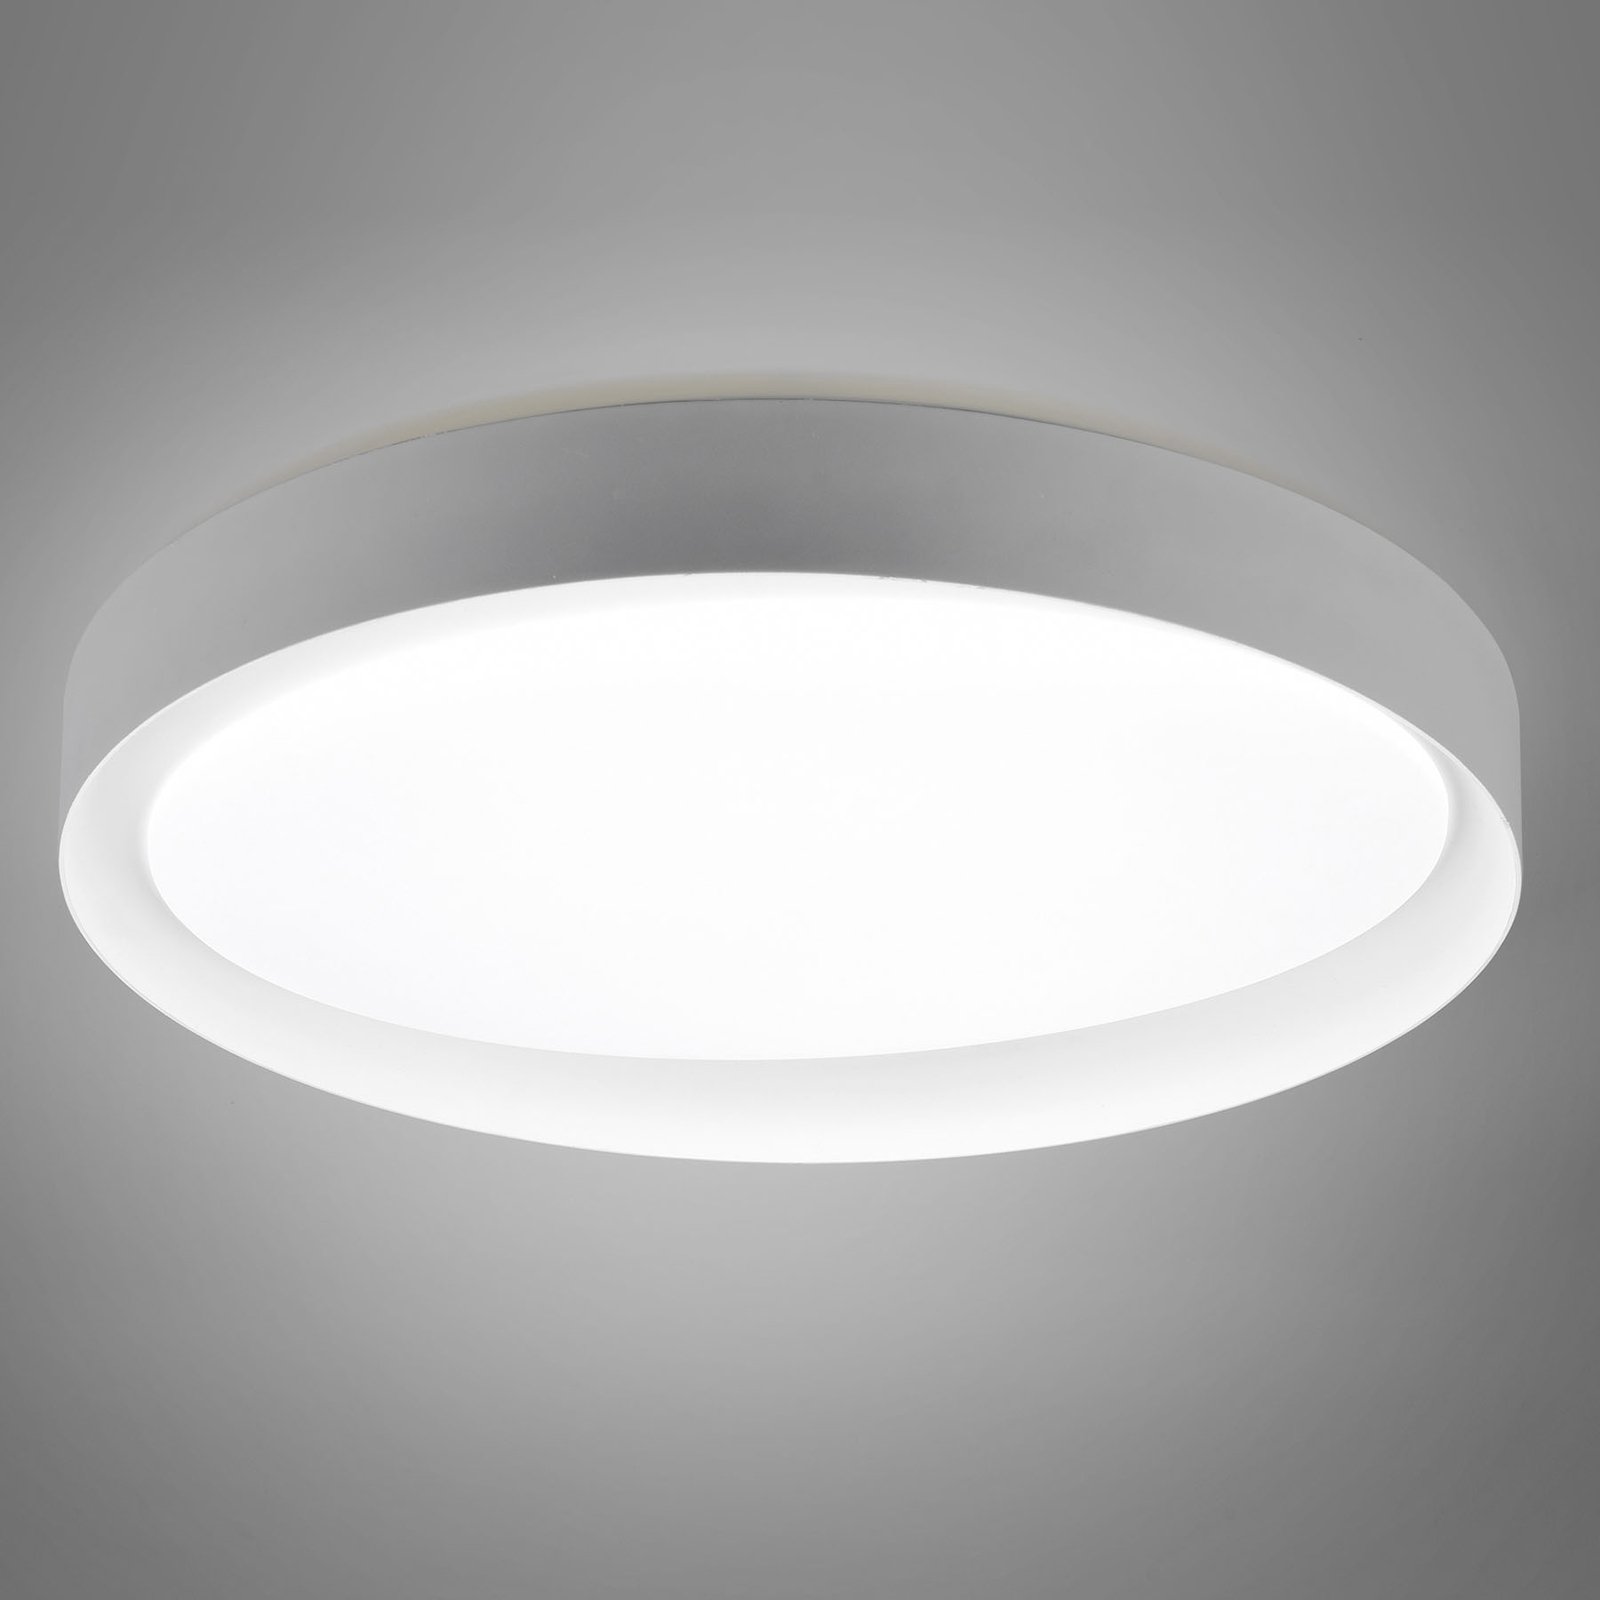 Plafón LED Zeta tunable white, gris/blanco